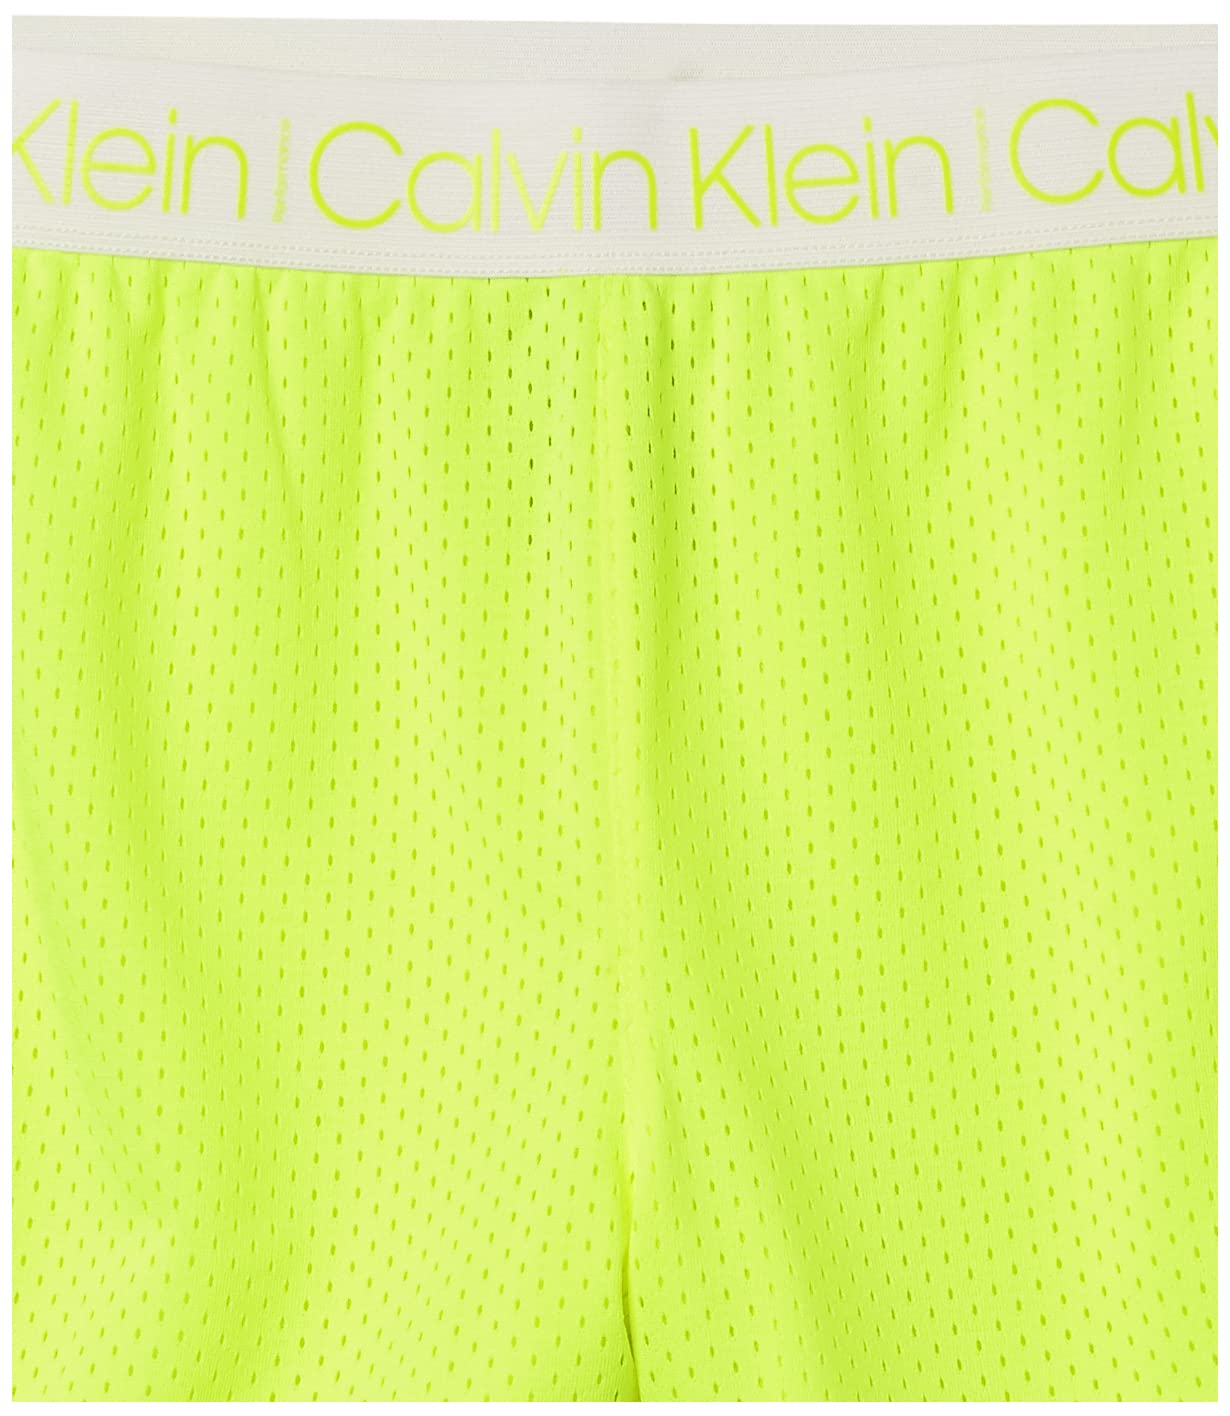 Calvin Klein Girls' Performance Pull-on Mesh Sport Shorts